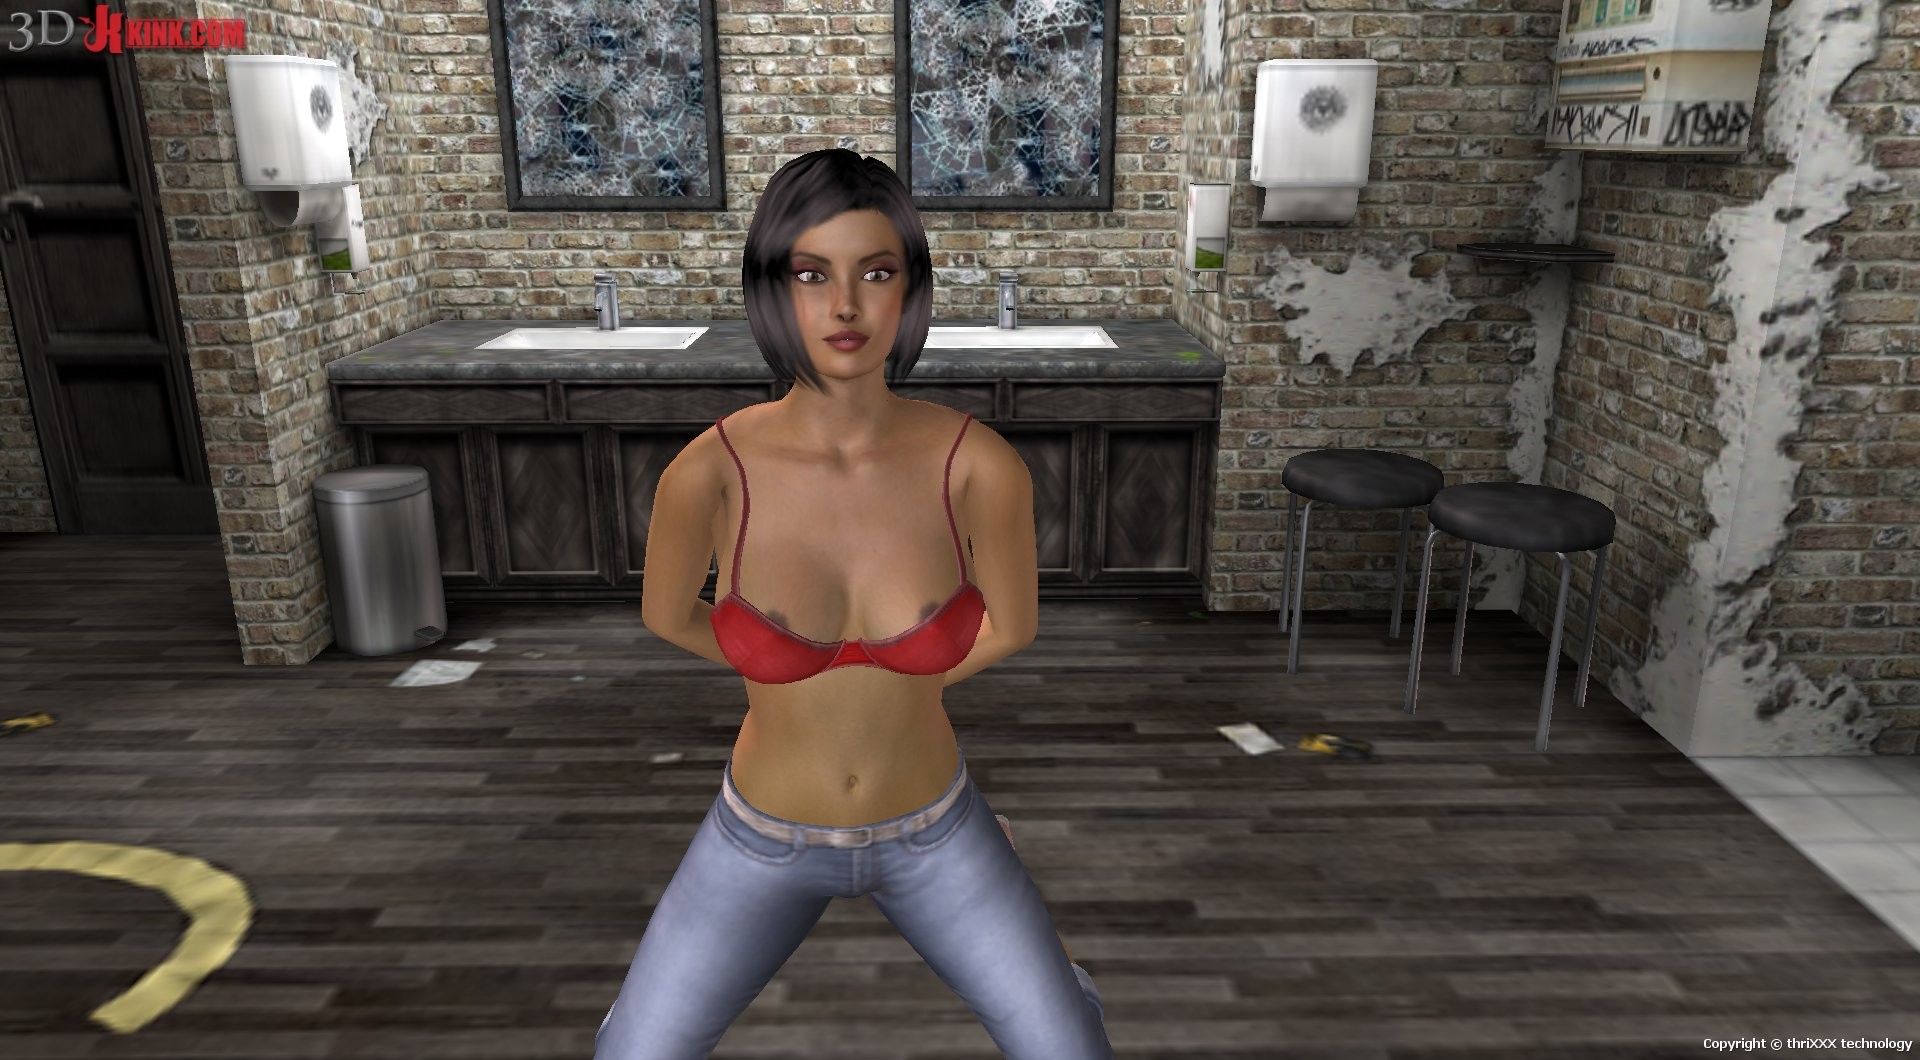 Heiß bdsm sex aktion erstellt in virtuellen fetisch 3d sex spiel!
 #69568961